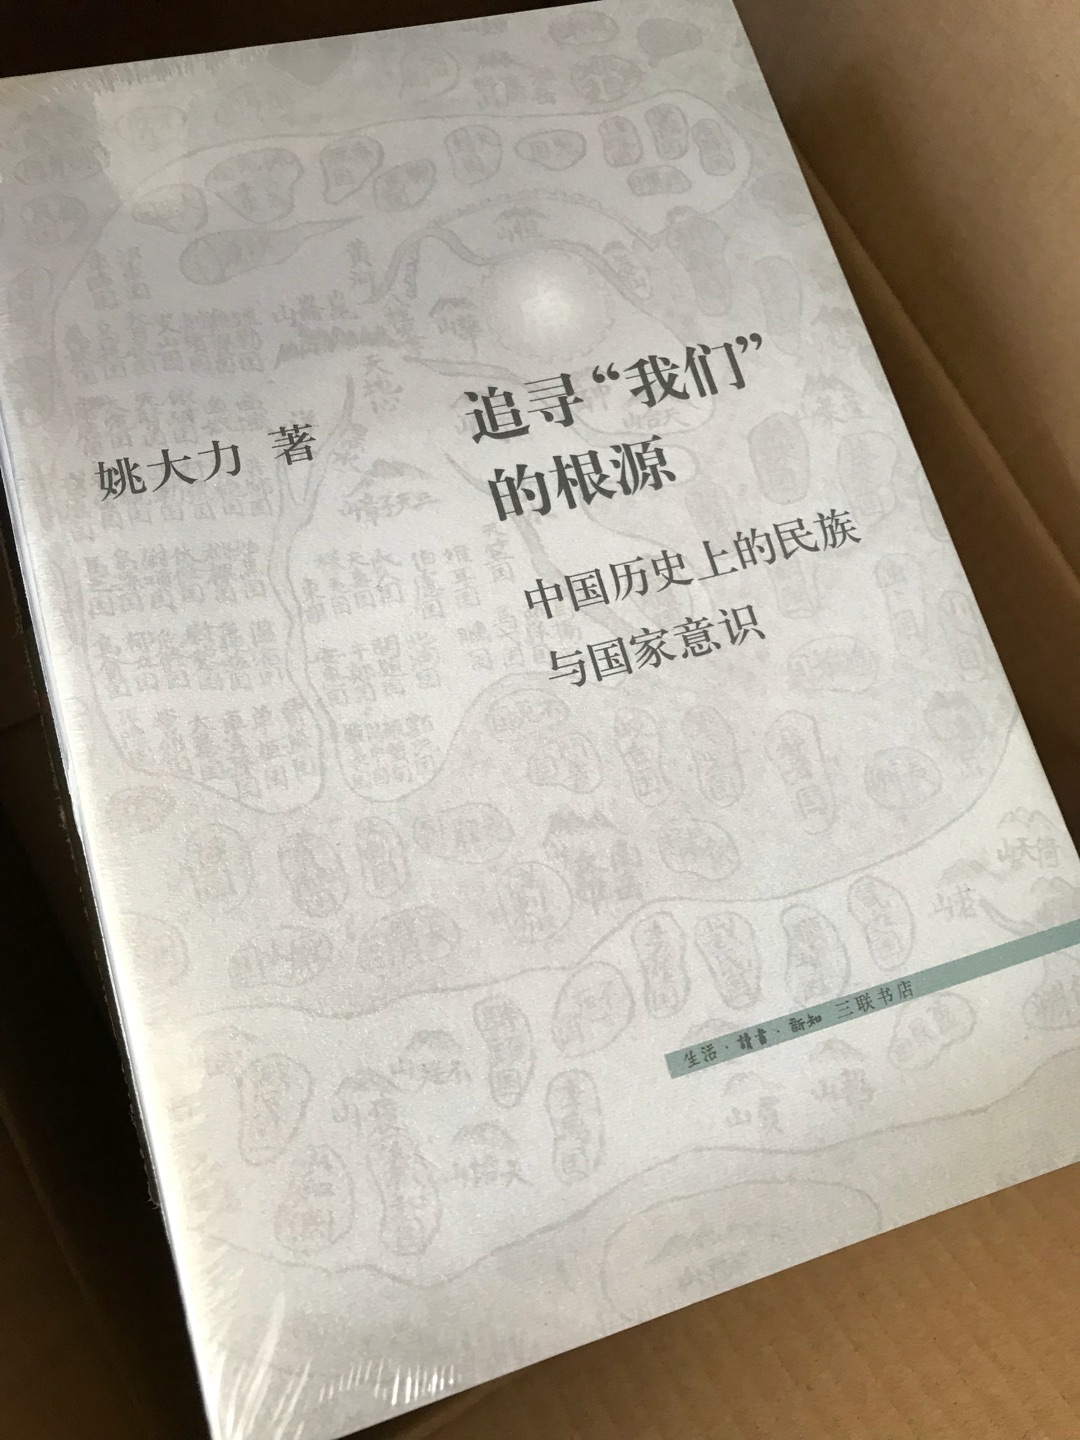 此书自1992年出版以来，深得读者的喜爱和好评，曾数度荣获重要的学术奖项，堪称中国近代史研究领域的经典。其